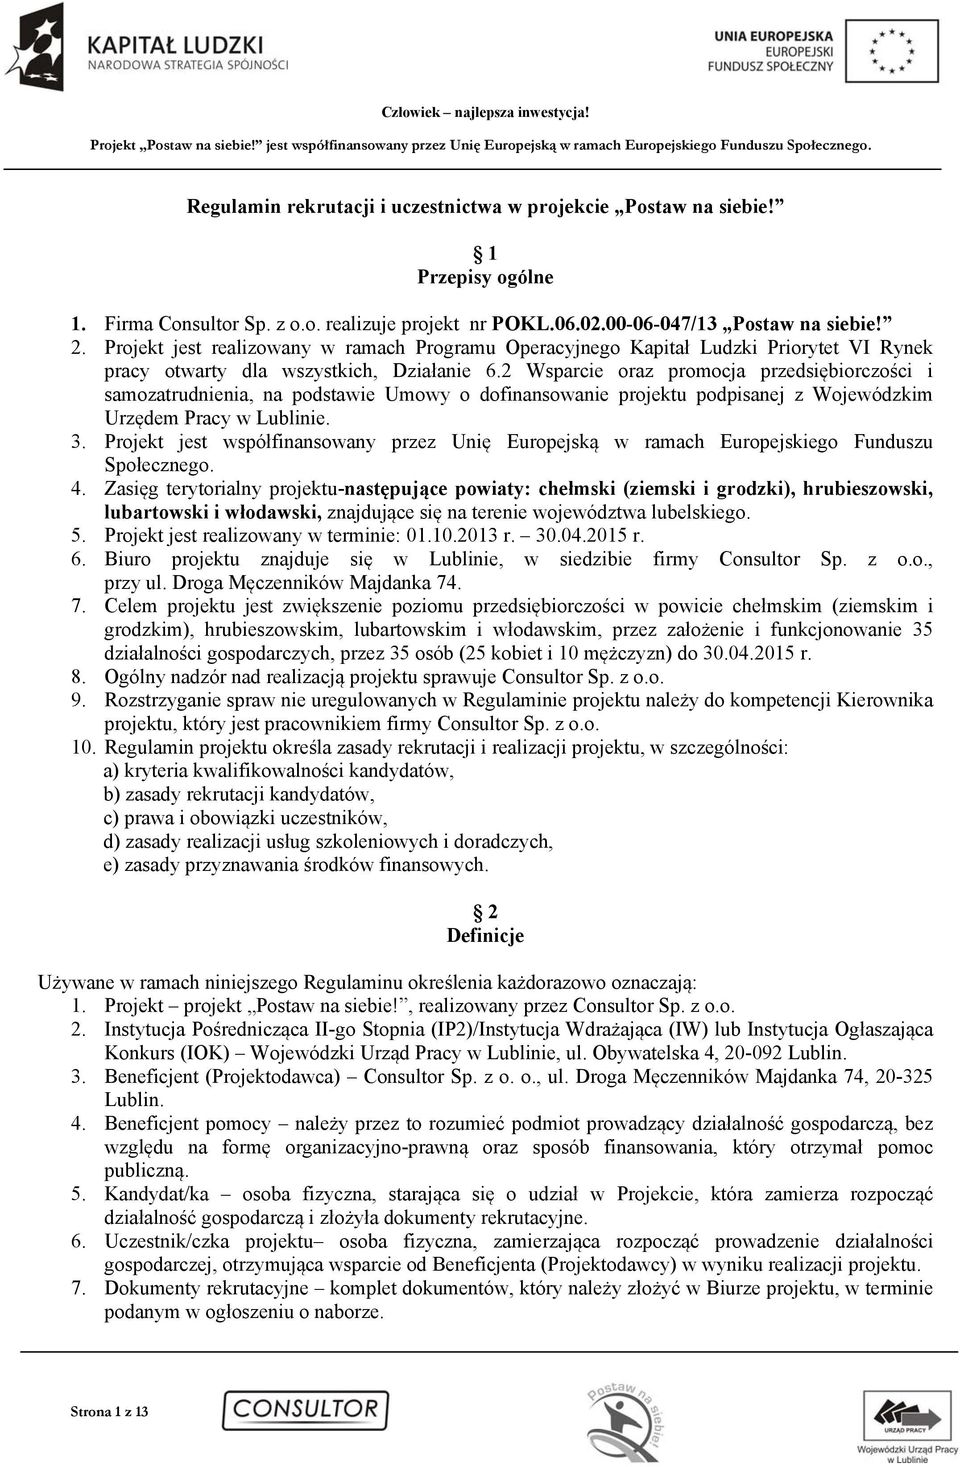 2 Wsparcie oraz promocja przedsiębiorczości i samozatrudnienia, na podstawie Umowy o dofinansowanie projektu podpisanej z Wojewódzkim Urzędem Pracy w Lublinie. 3.